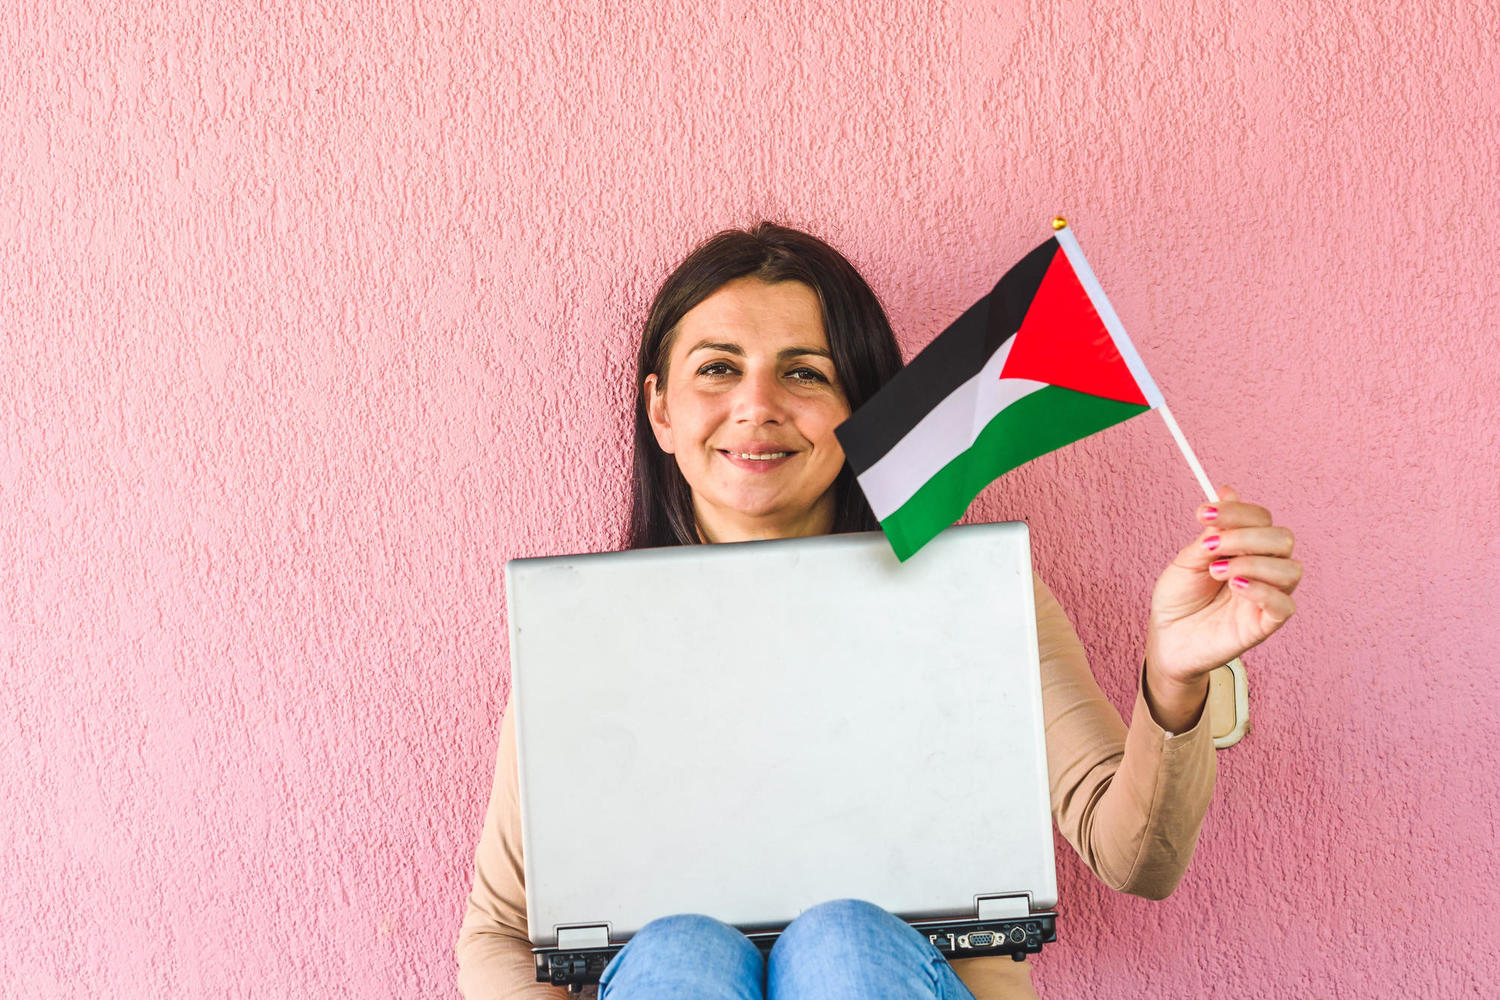 Впервые: израильский хайтек получил квоту на ввоз палестинских работников